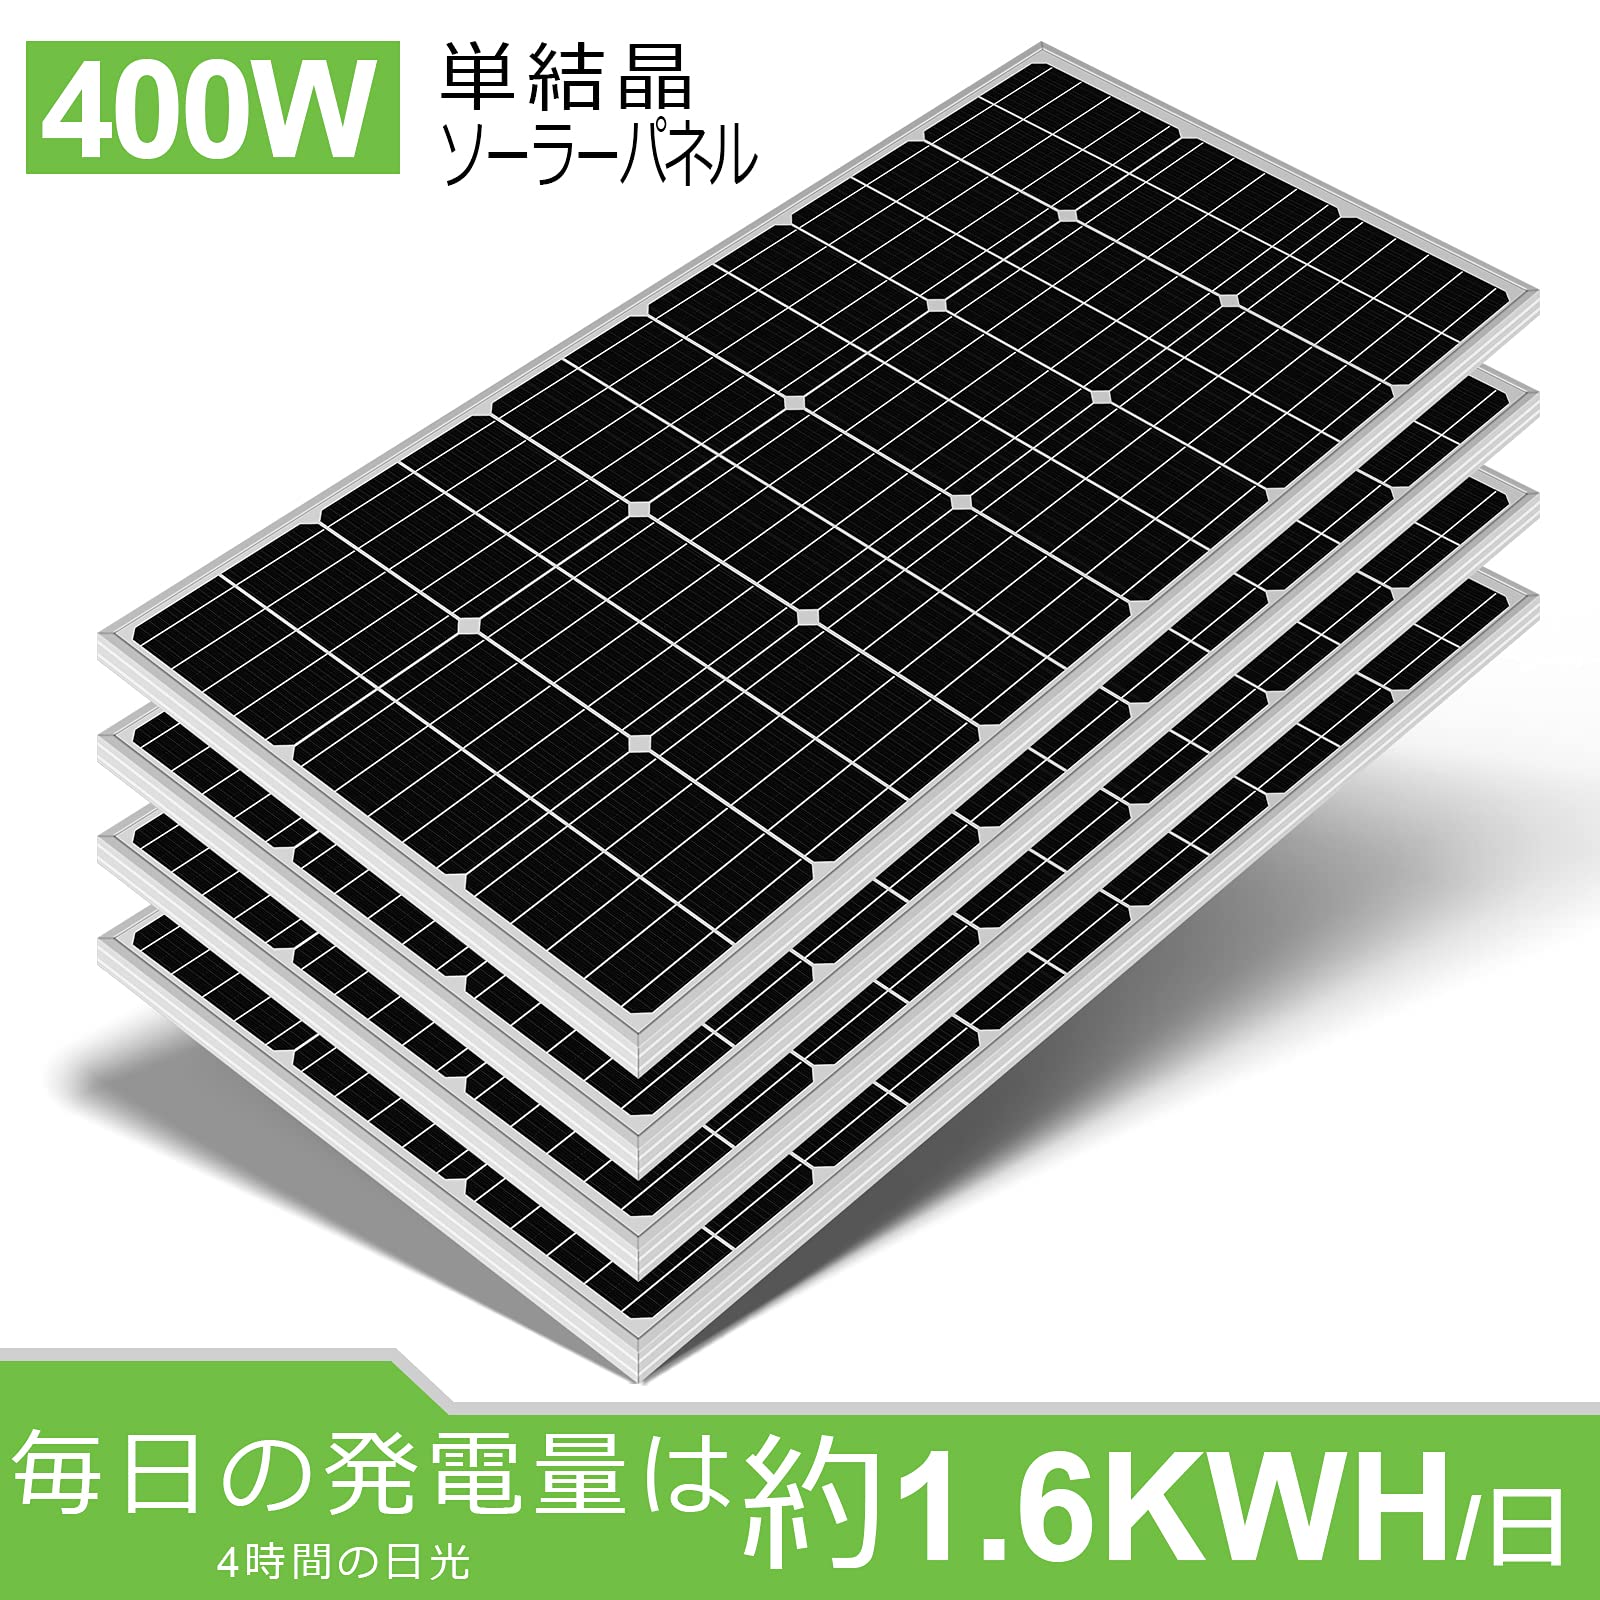 400W ソーラーパネルキット 太陽光発電 キット 単結晶 60Aソーラー充電 